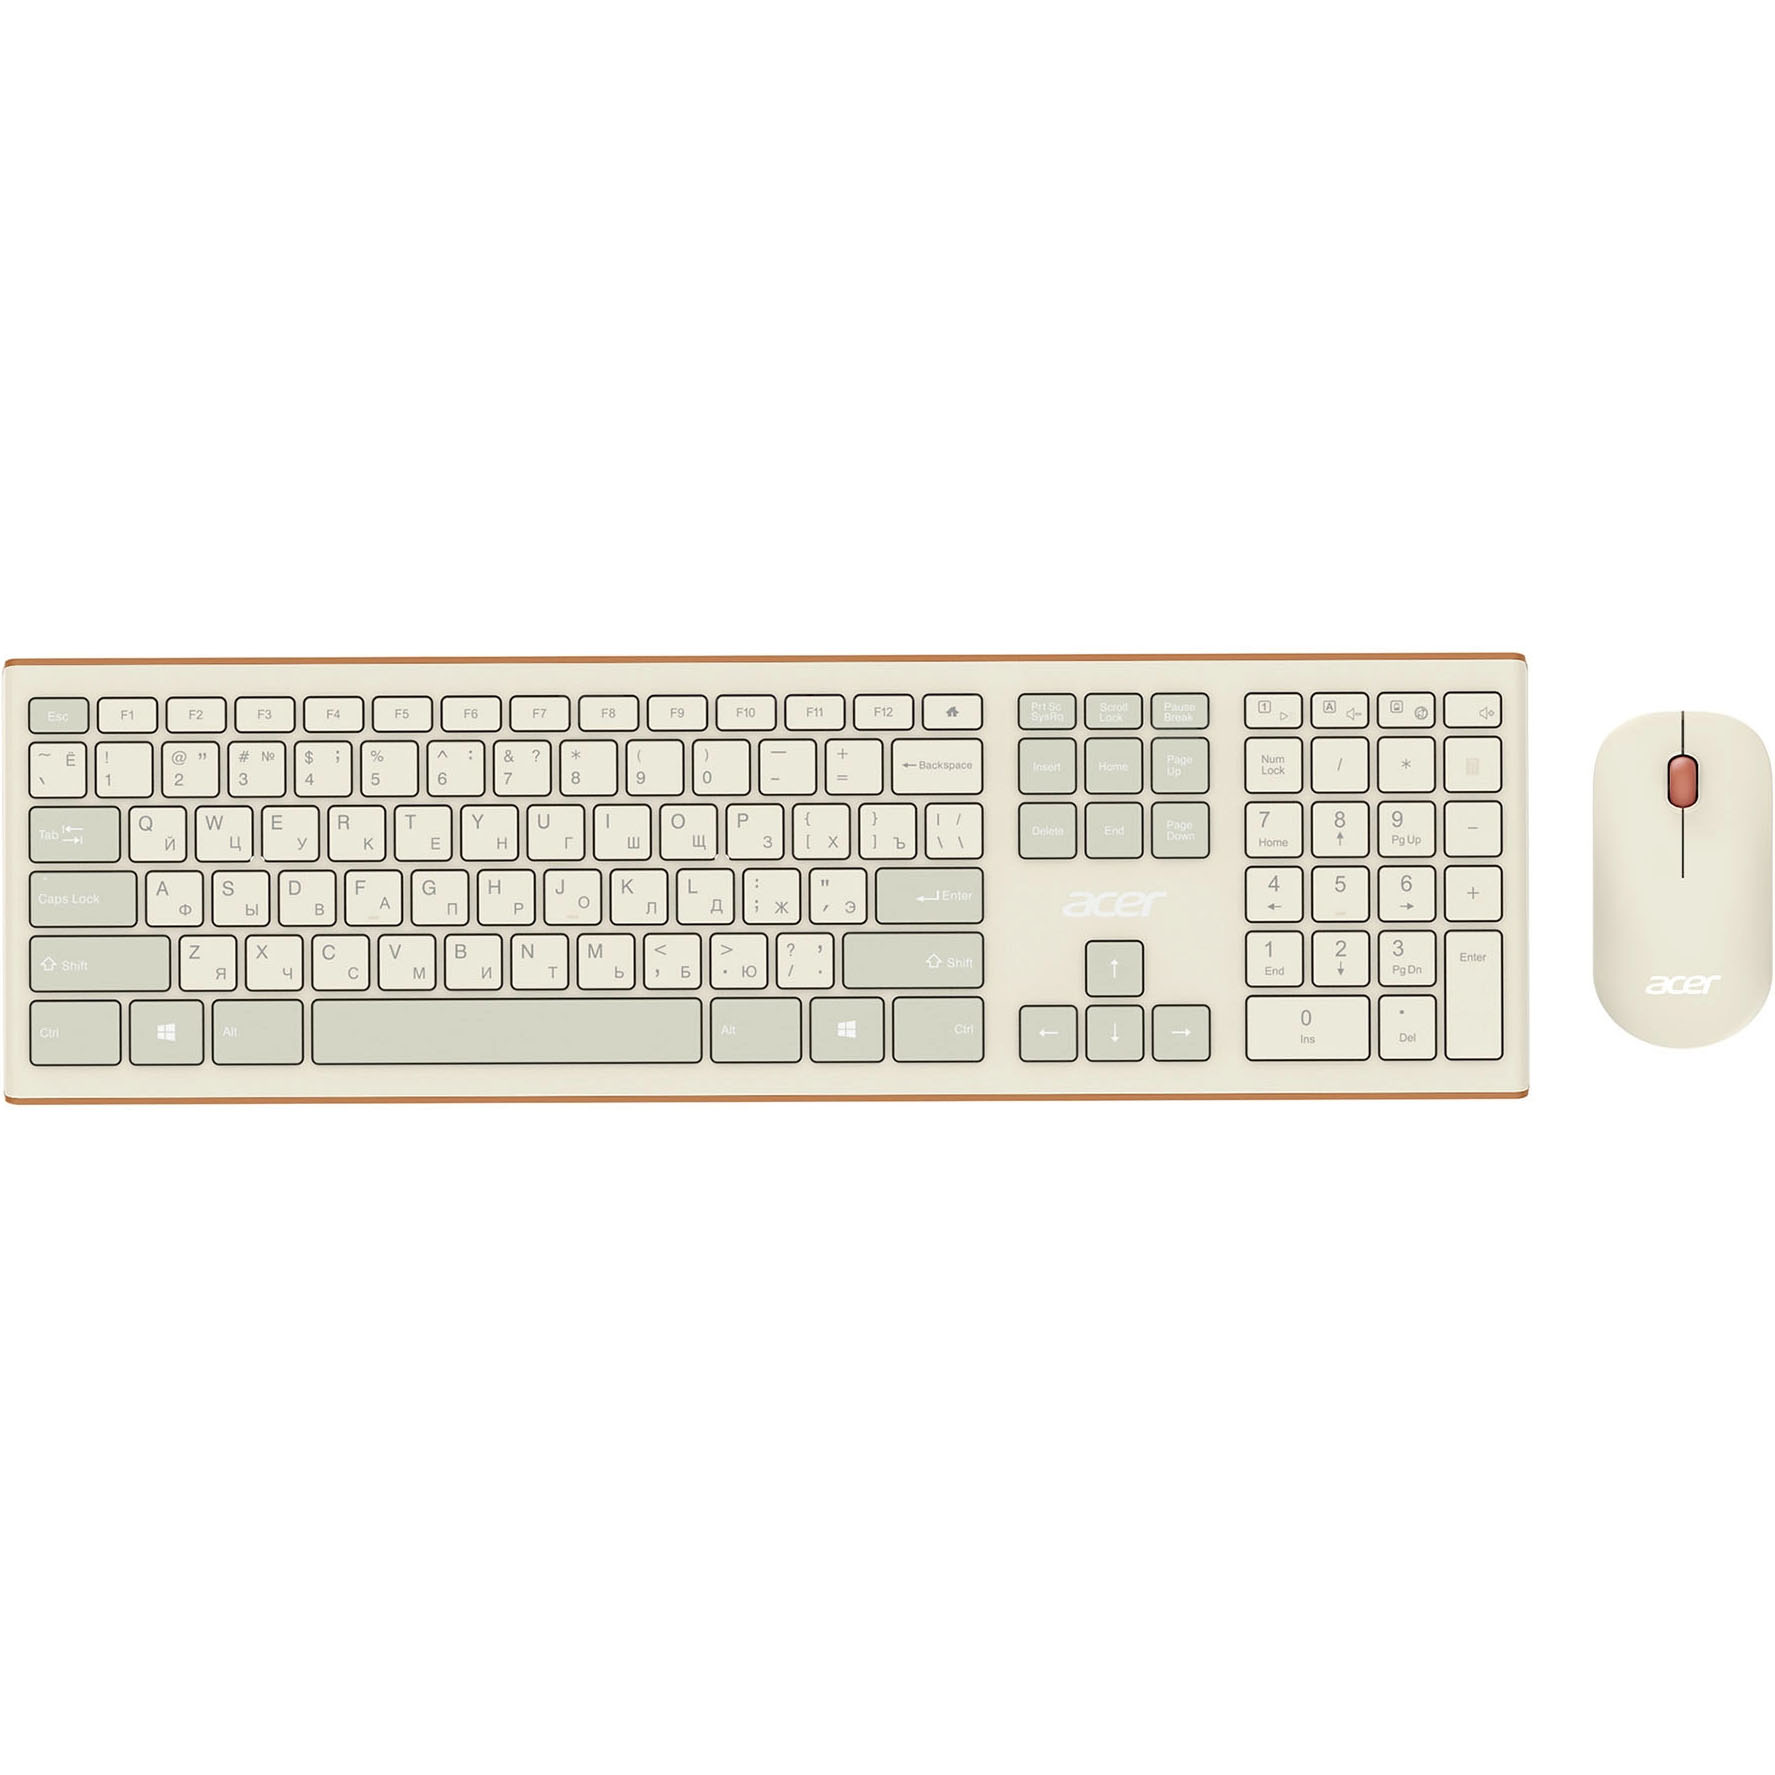 Комплект клавиатуры и мыши Acer OCC200 бежевый, коричневый клавиатура мышь acer occ200 белый желтый zl accee 002